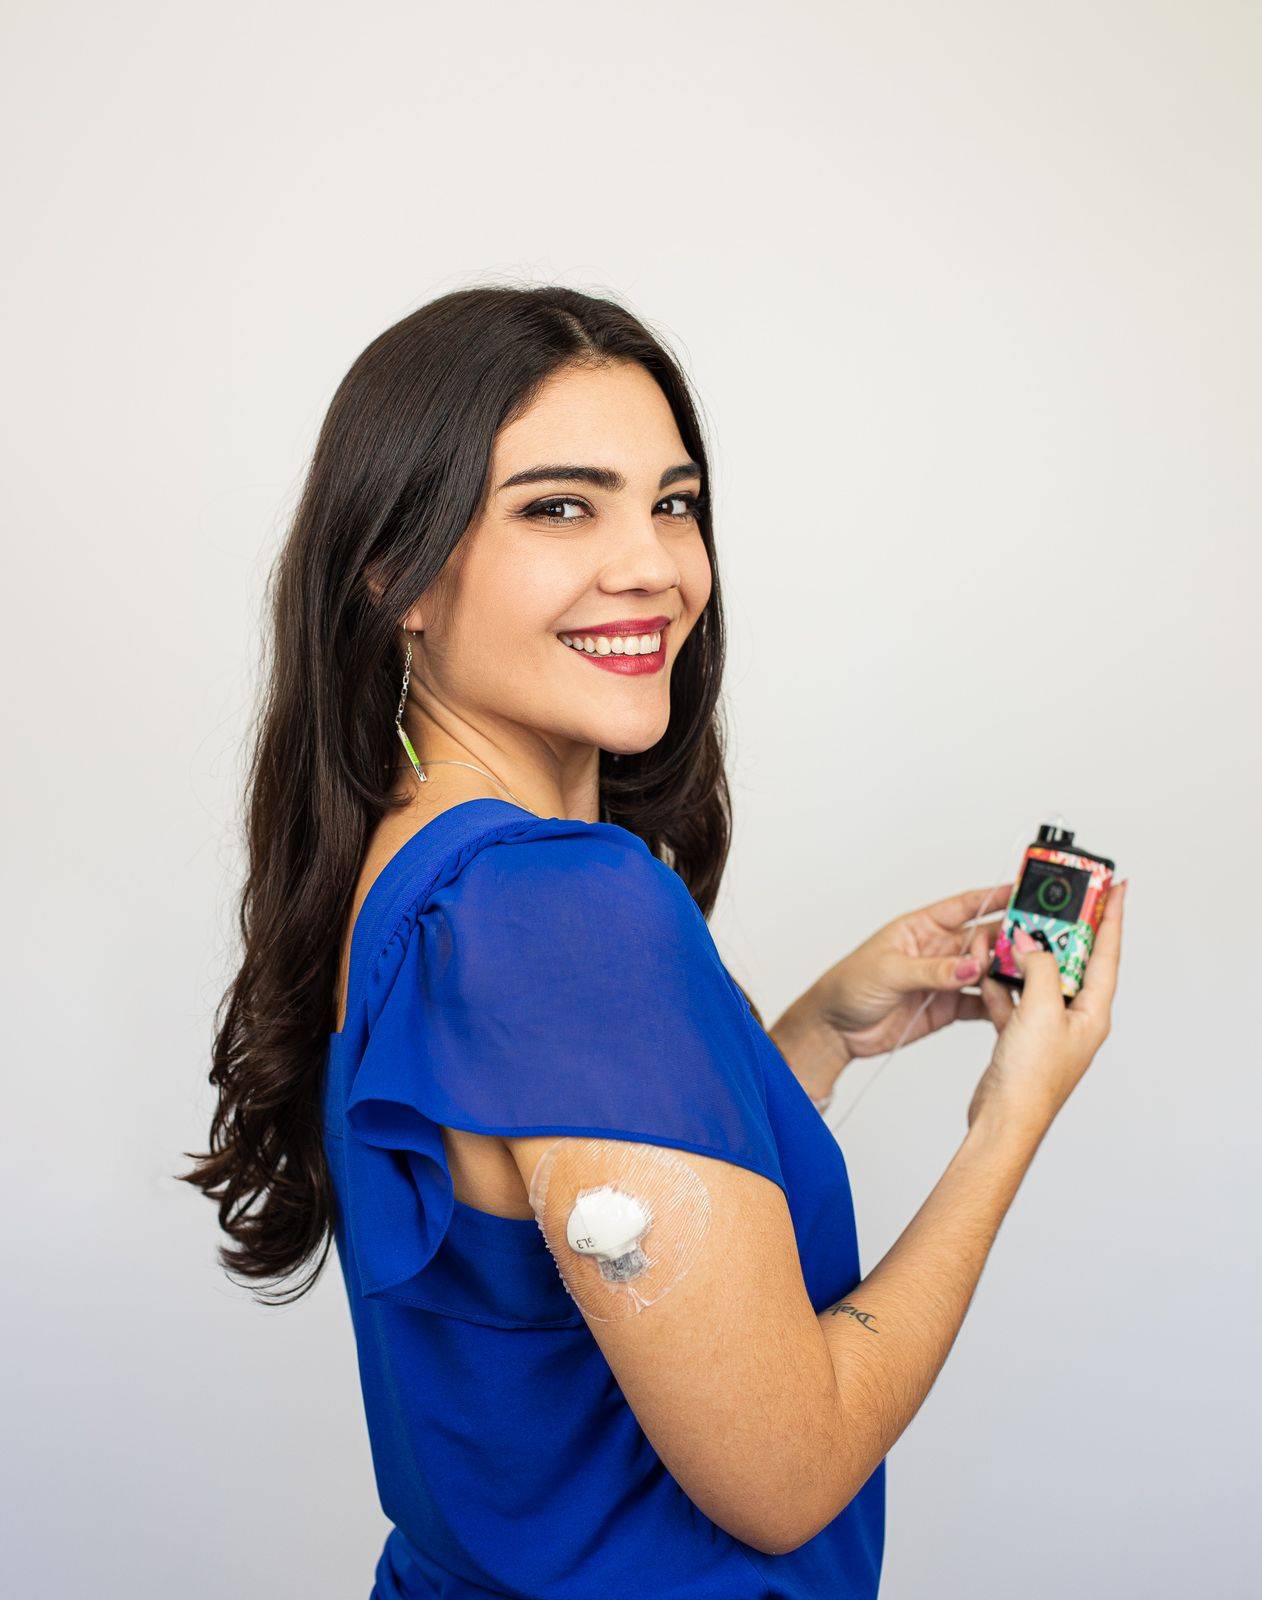 foto da Bia, uma mulher de longos cabelos pretos, com maquiagem clara e uma blusa azul royal segurando um aparelho de insulina